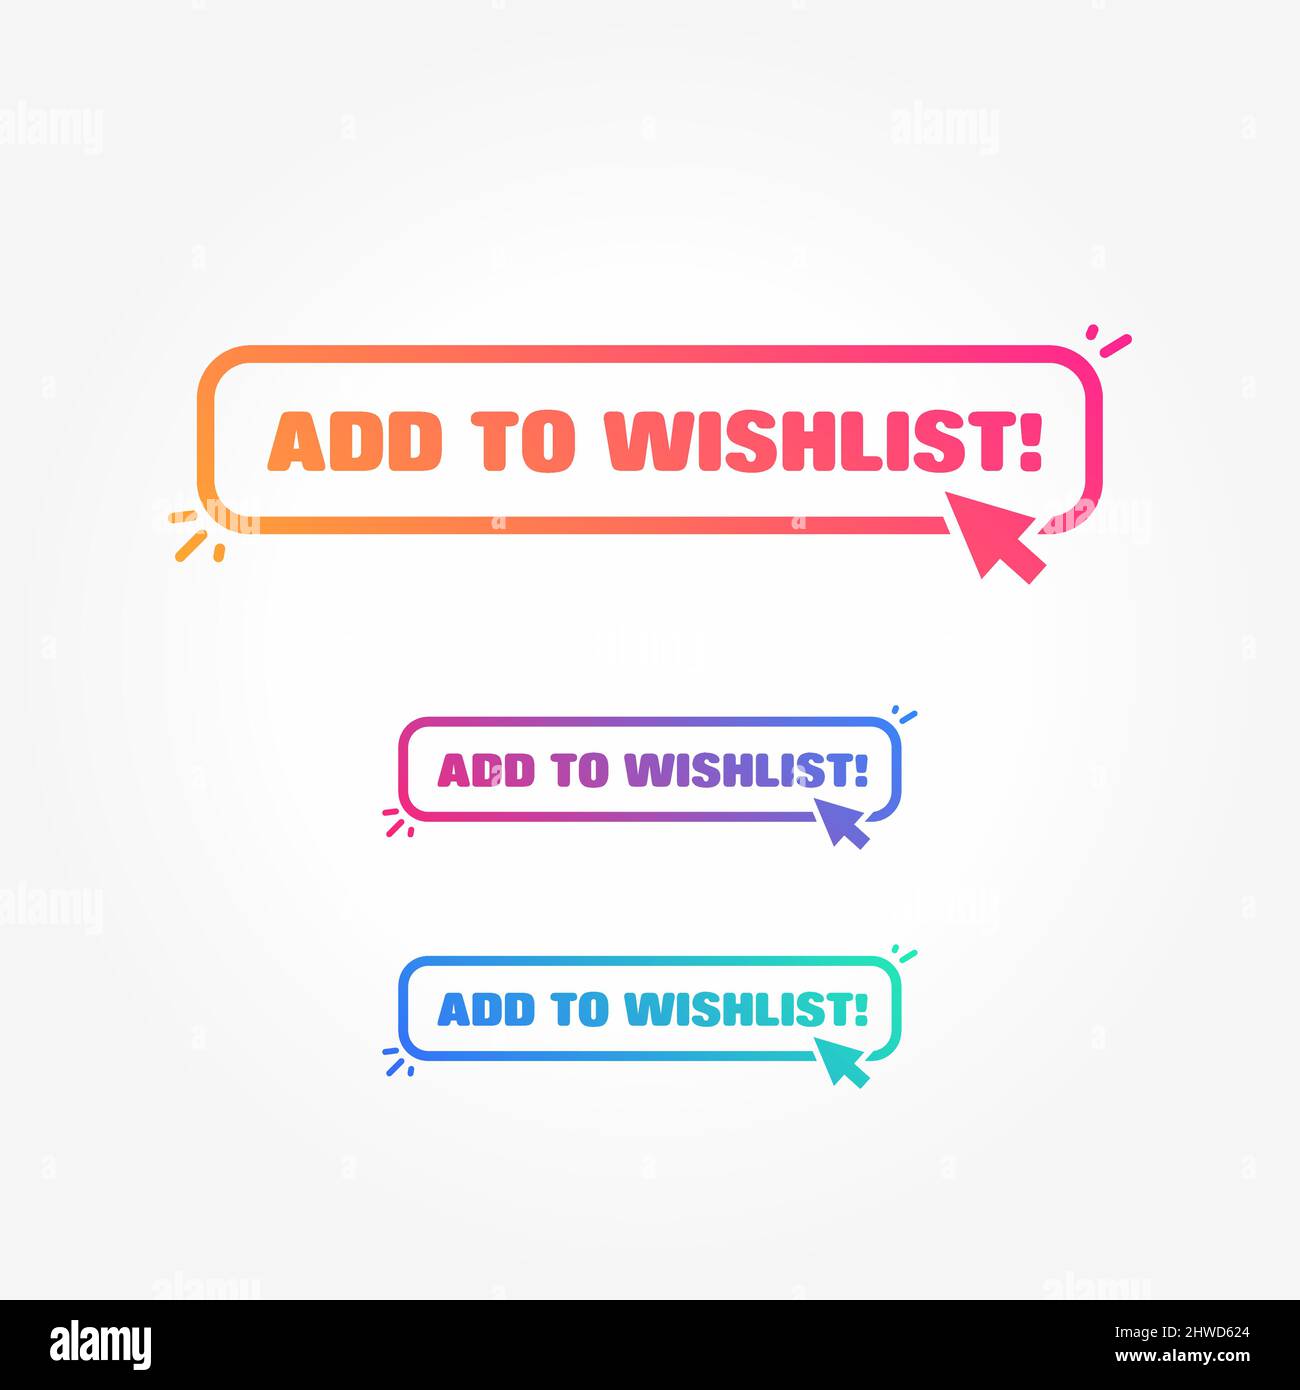 add wishlist